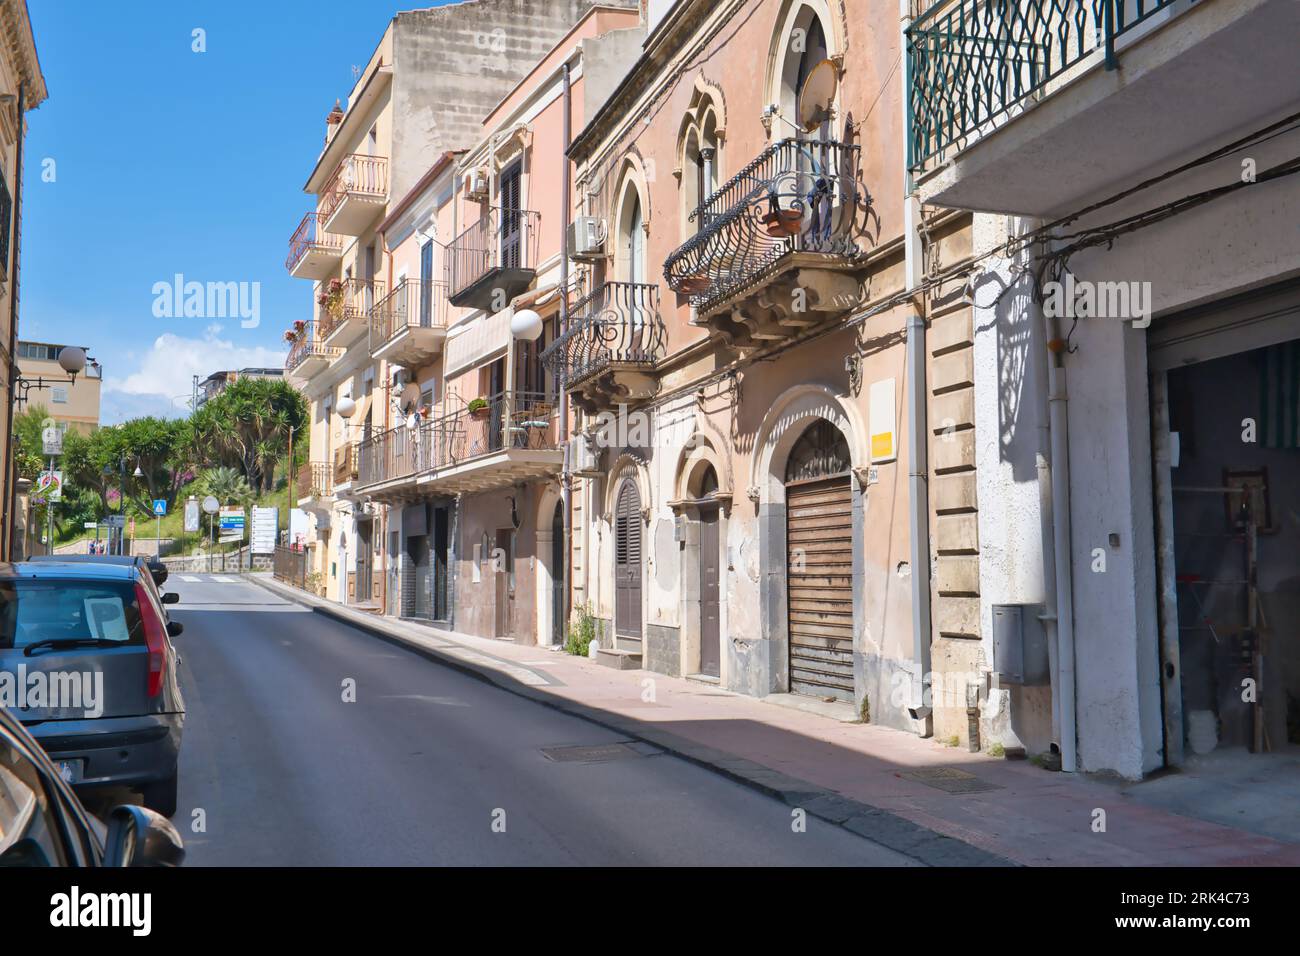 typical street in Giardini Naxos near Taormina, Sicily, Italy Stock Photo